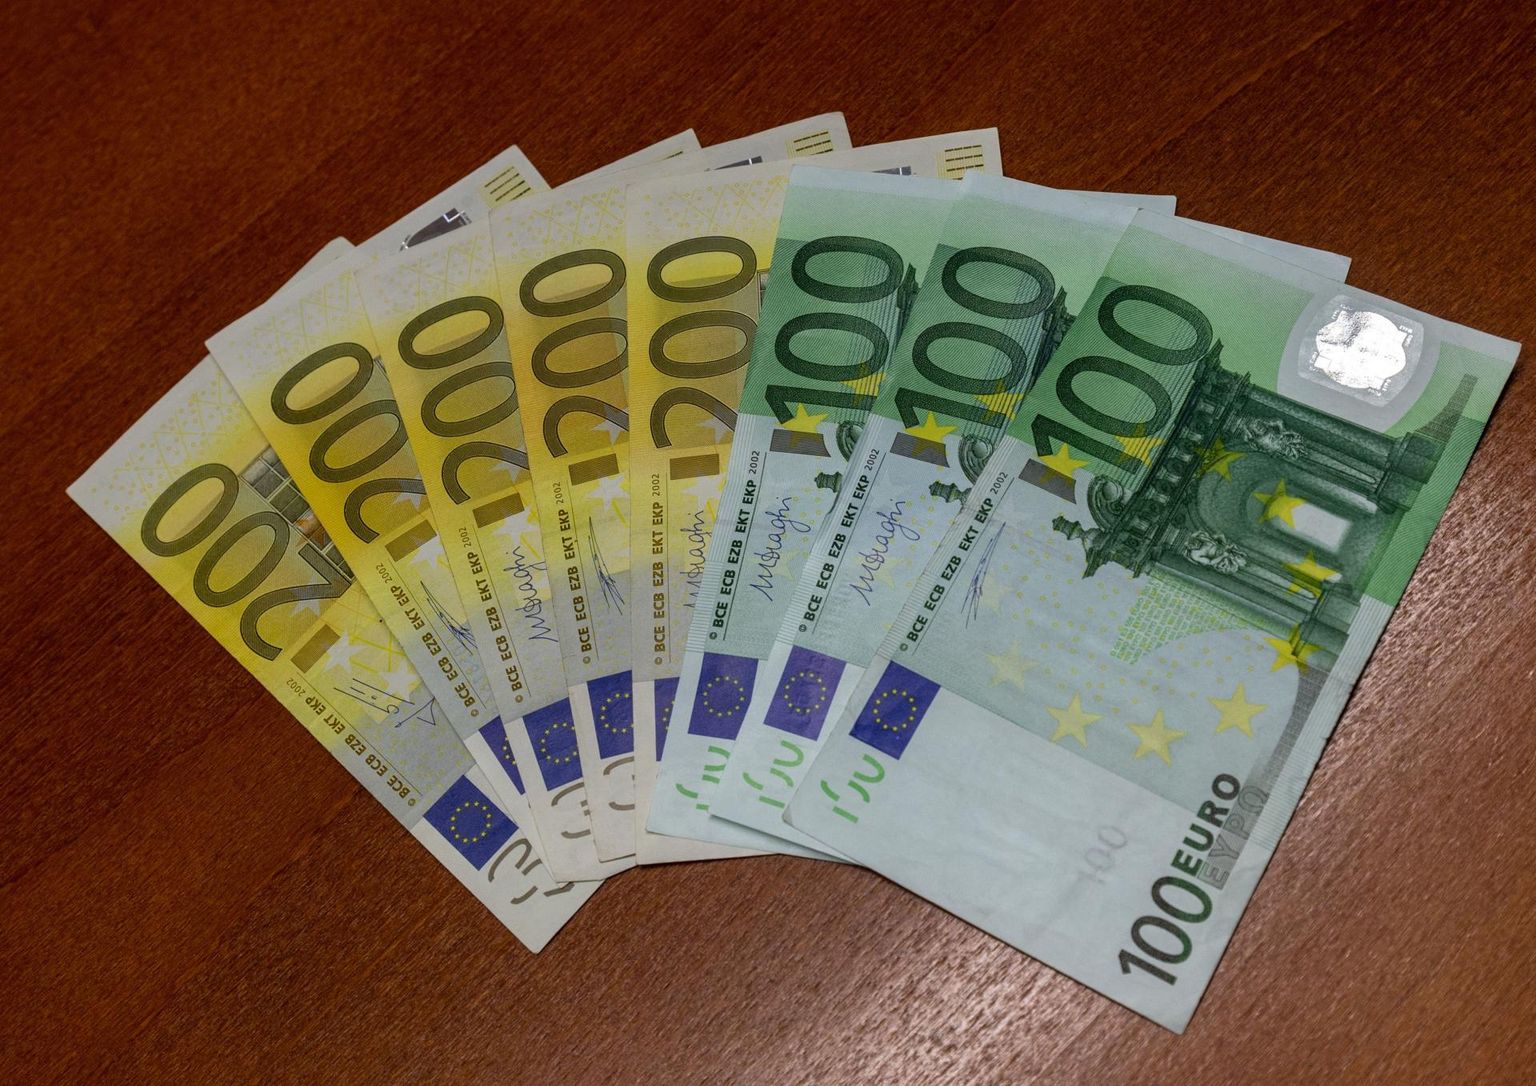 Keskmine elamisväärne brutopalk on töötajate sõnul 1865 eurot, mida on 555 eurot enam kui oli Eesti keskmine brutopalk 2018. aastal.